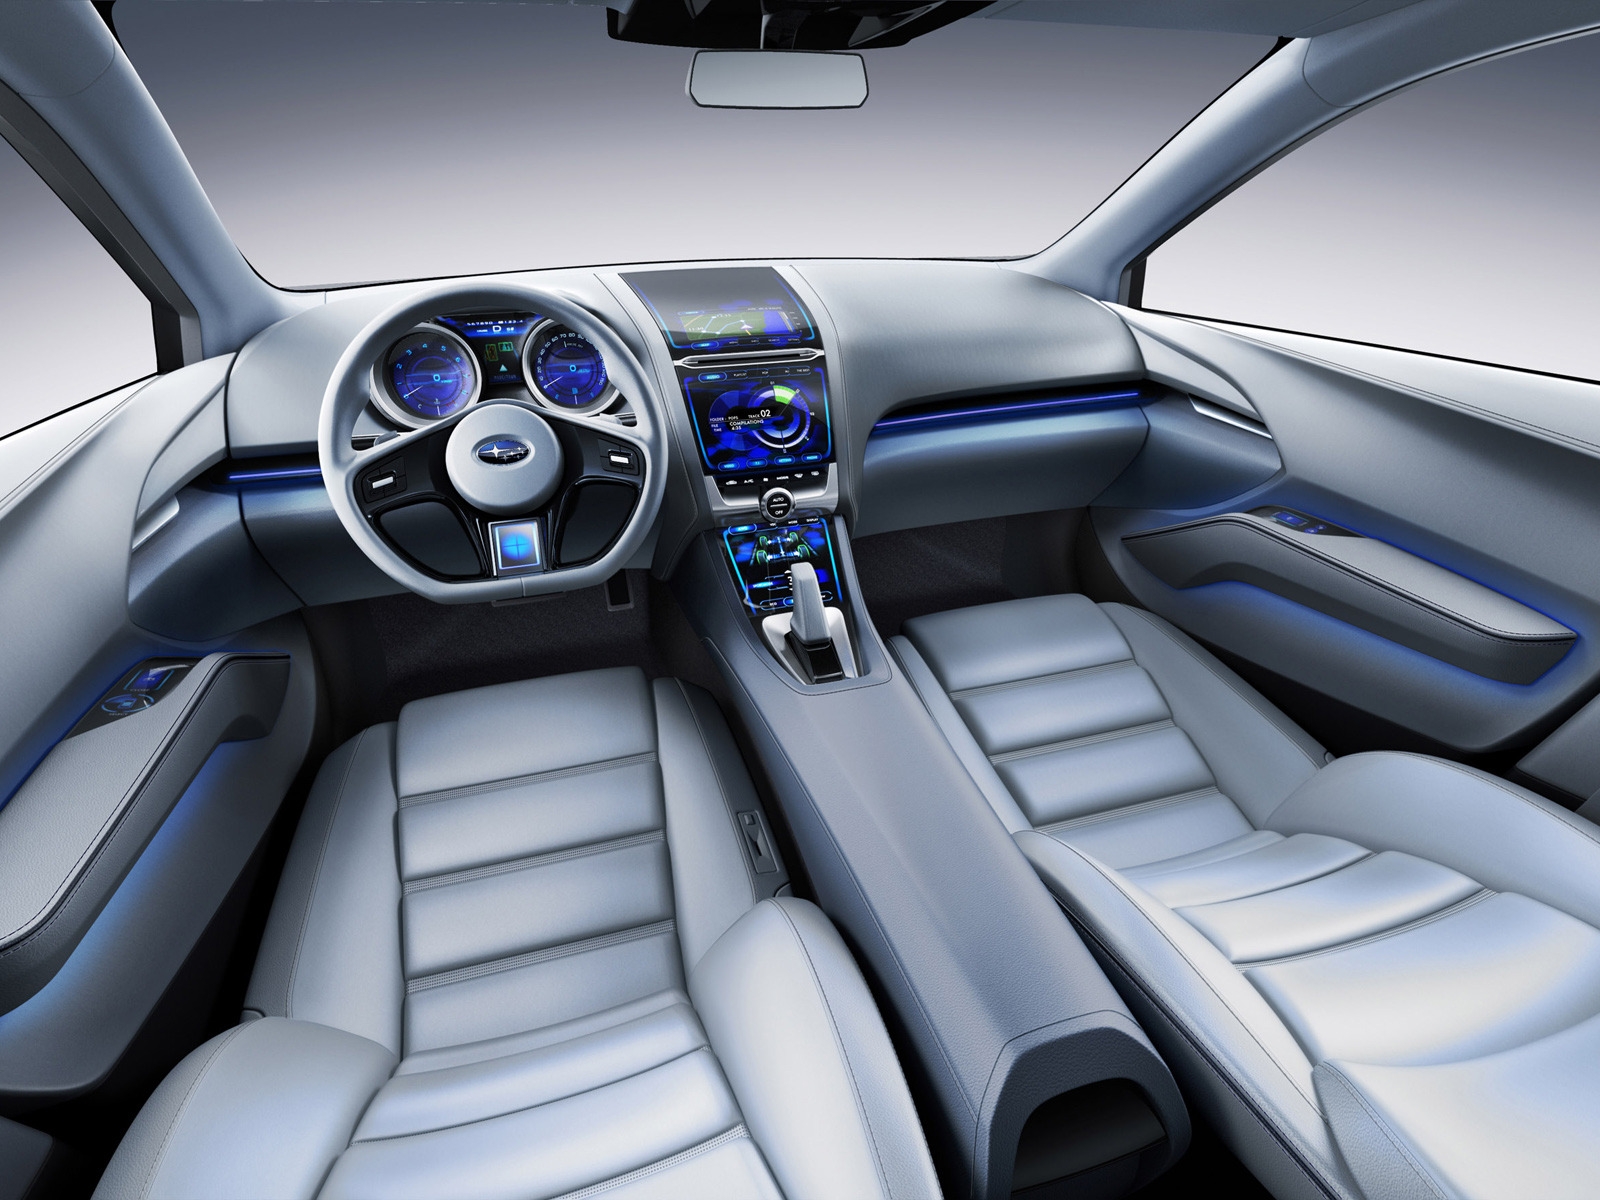 Subaru Impreza Concept Interior for 1600 x 1200 resolution